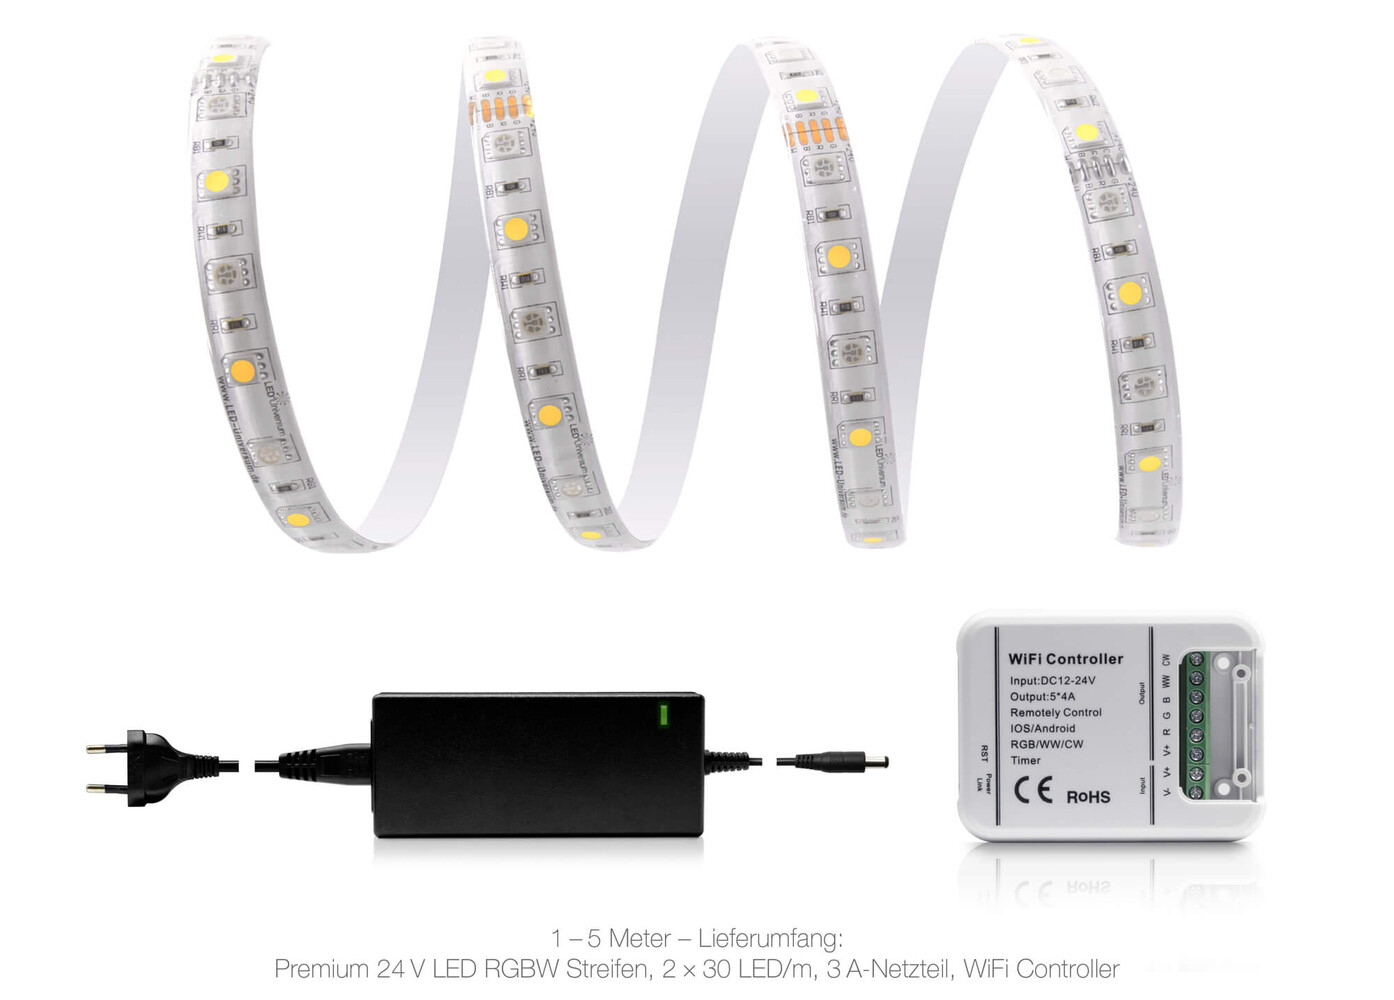 Hochwertiger und farbenfroher LED Streifen von LED Universum mit moderner WLAN Technologie und robustem IP65 Schutz